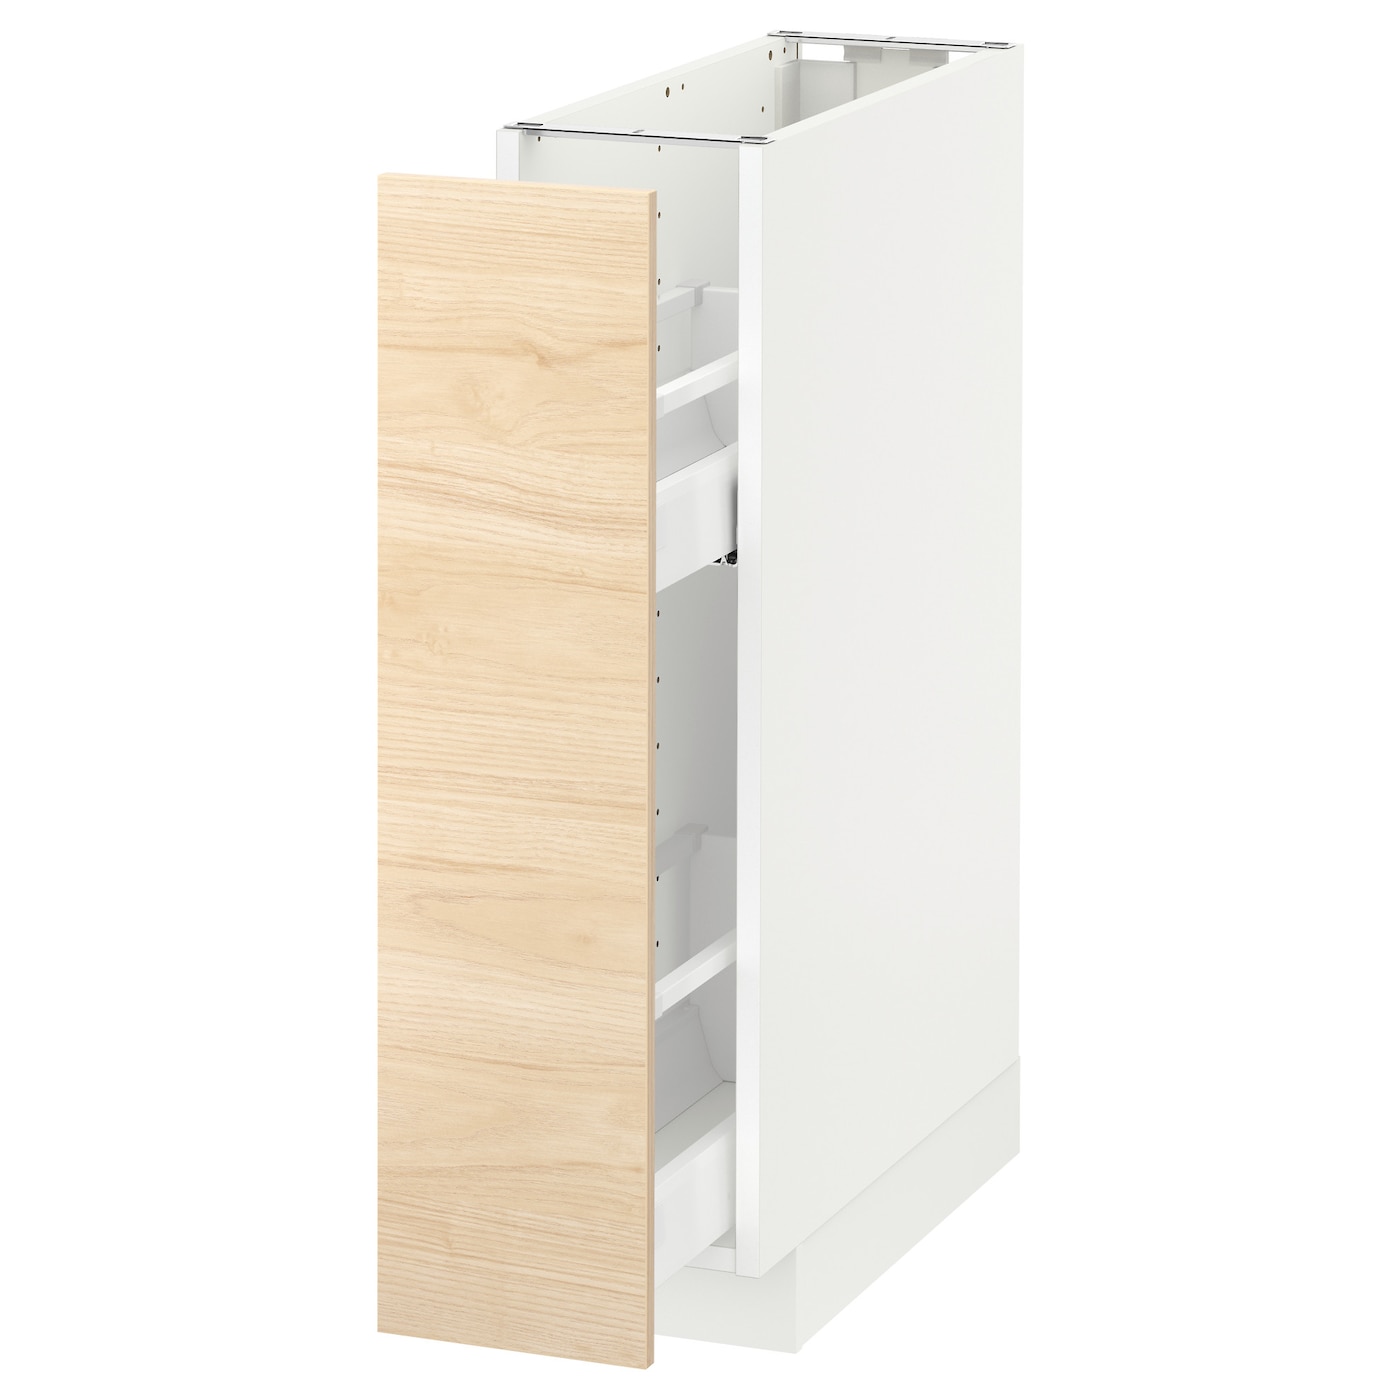 Напольный шкаф - IKEA METOD, 88x62x20см, белый/светлый ясень, МЕТОД ИКЕА